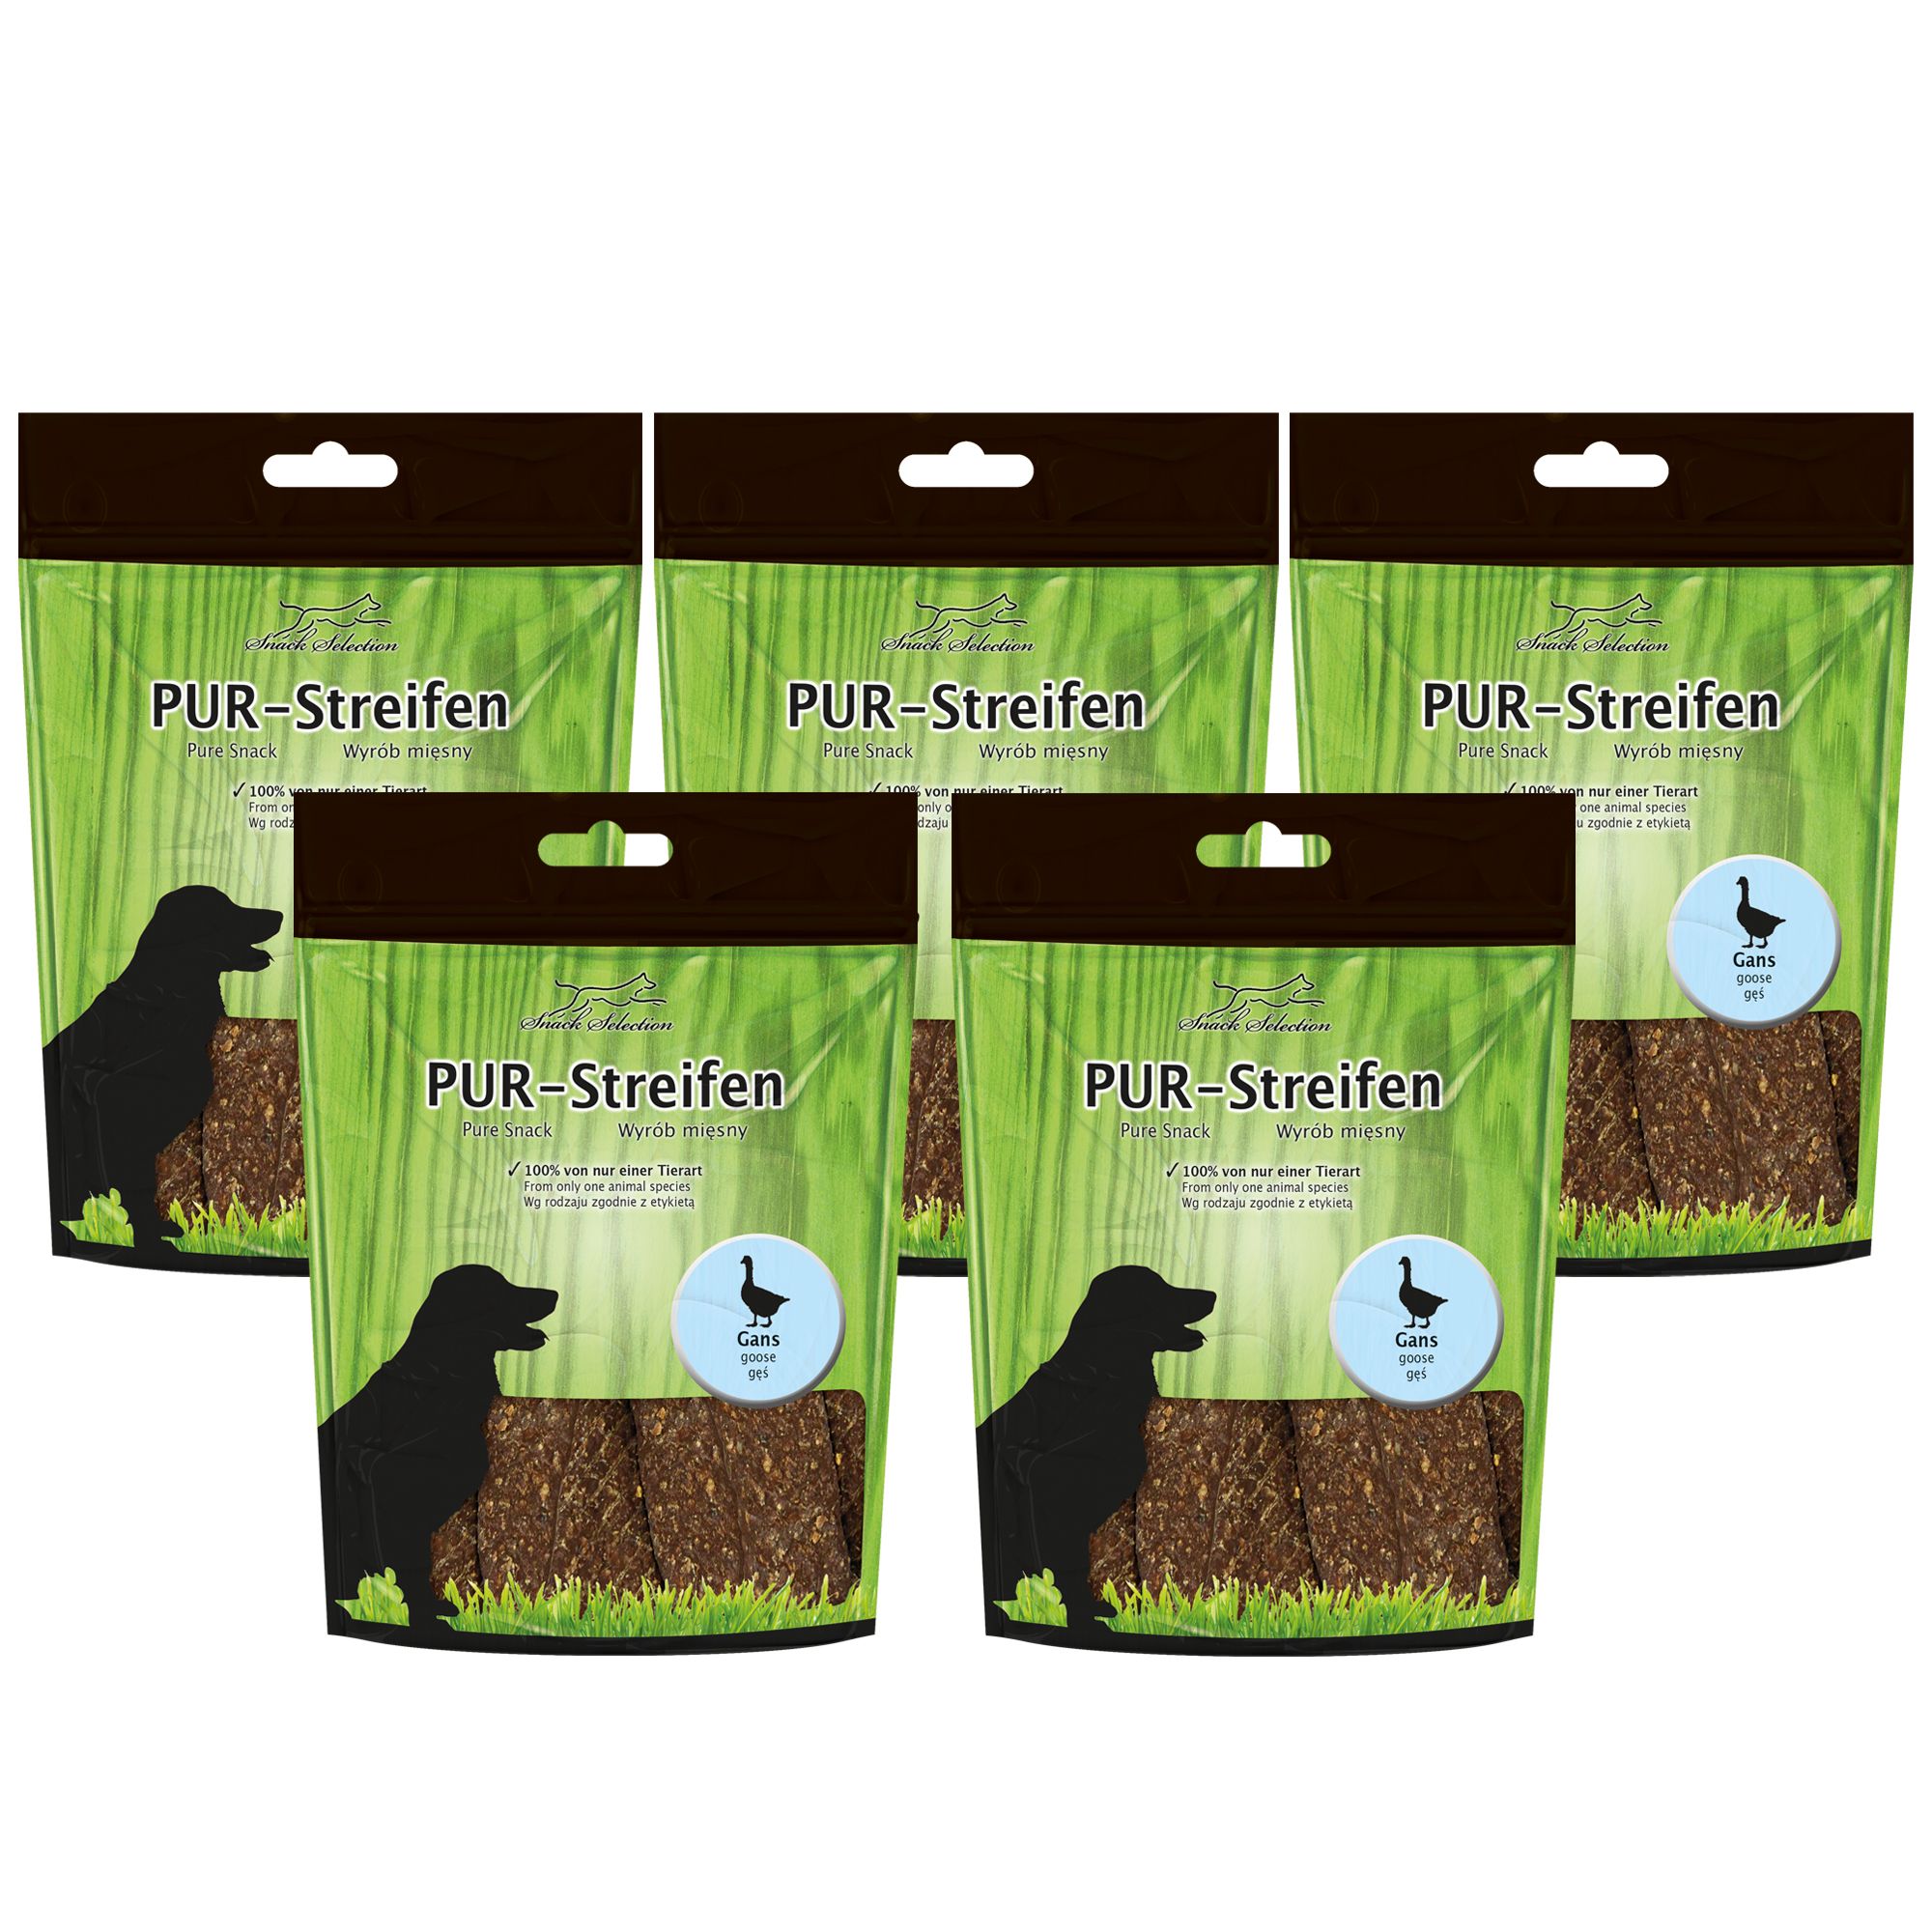 Pur Streifen Gans - Kausnack für Hunde - Hundeleckerlie ohne Zusatzstoffe